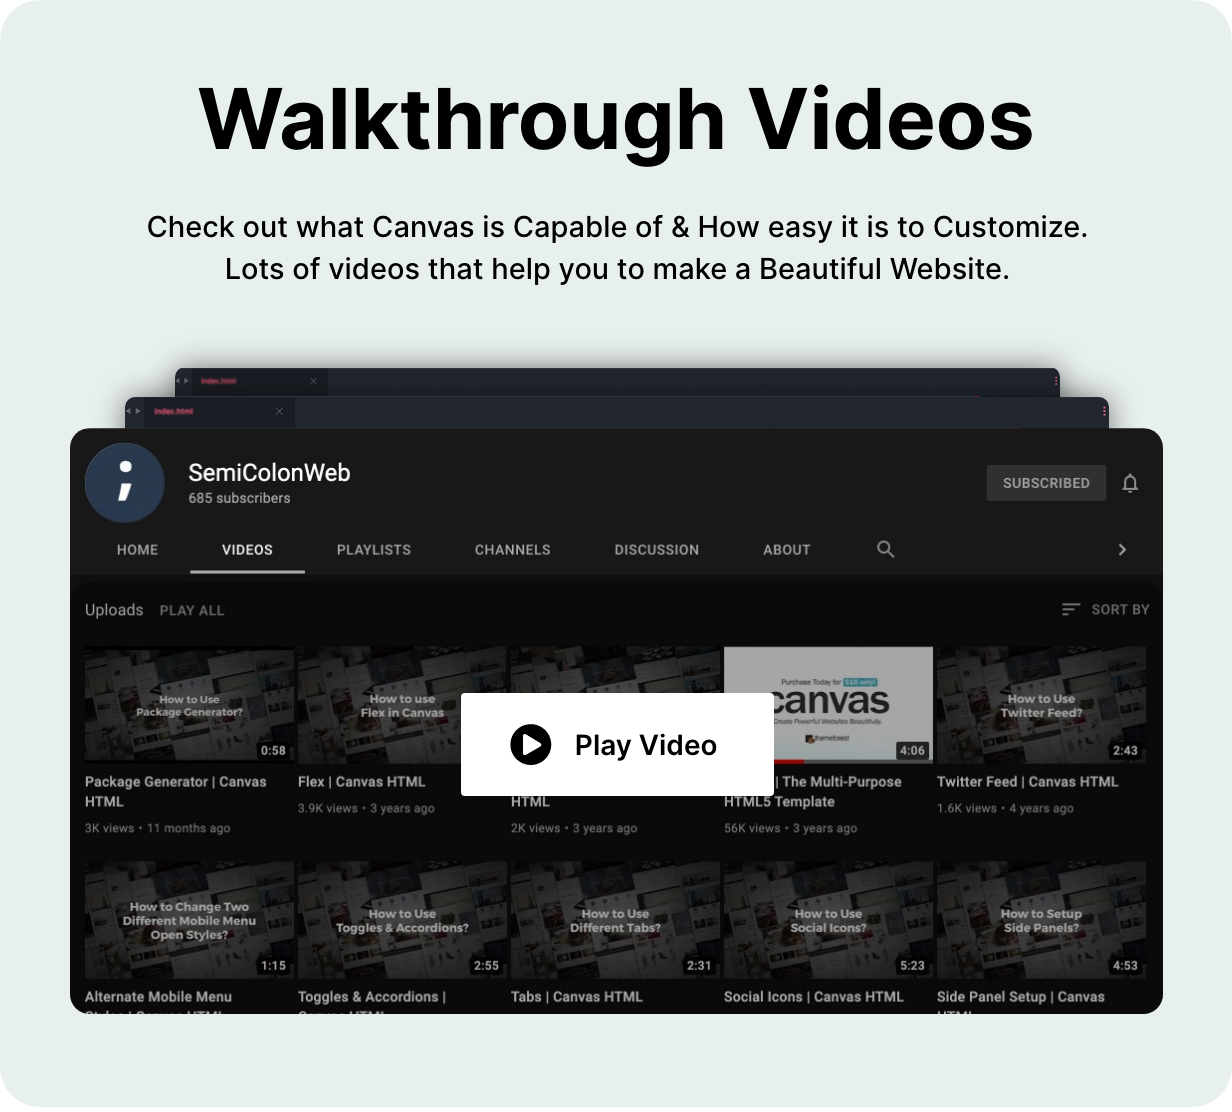 Walkthrough Videos